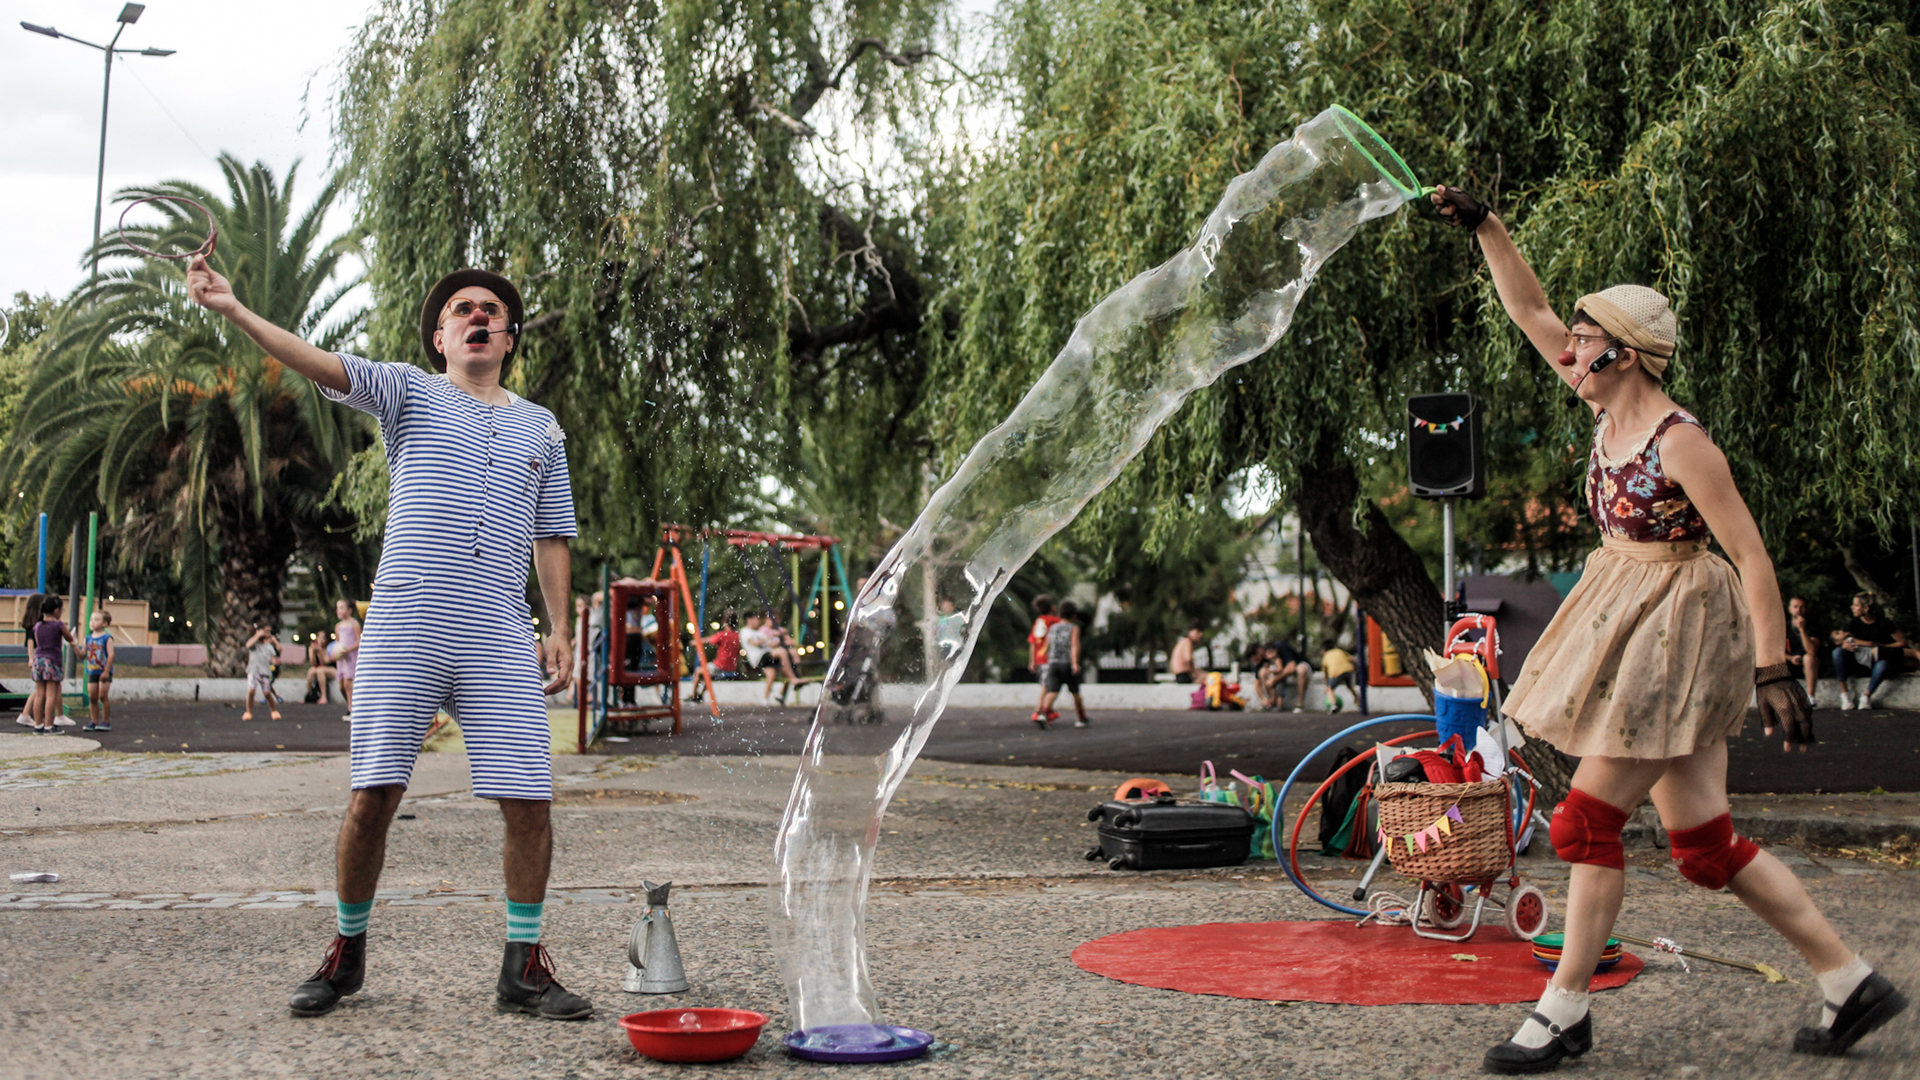 Duo Zoquetes Ambulantes jugando con burbujas de jabon en el parque